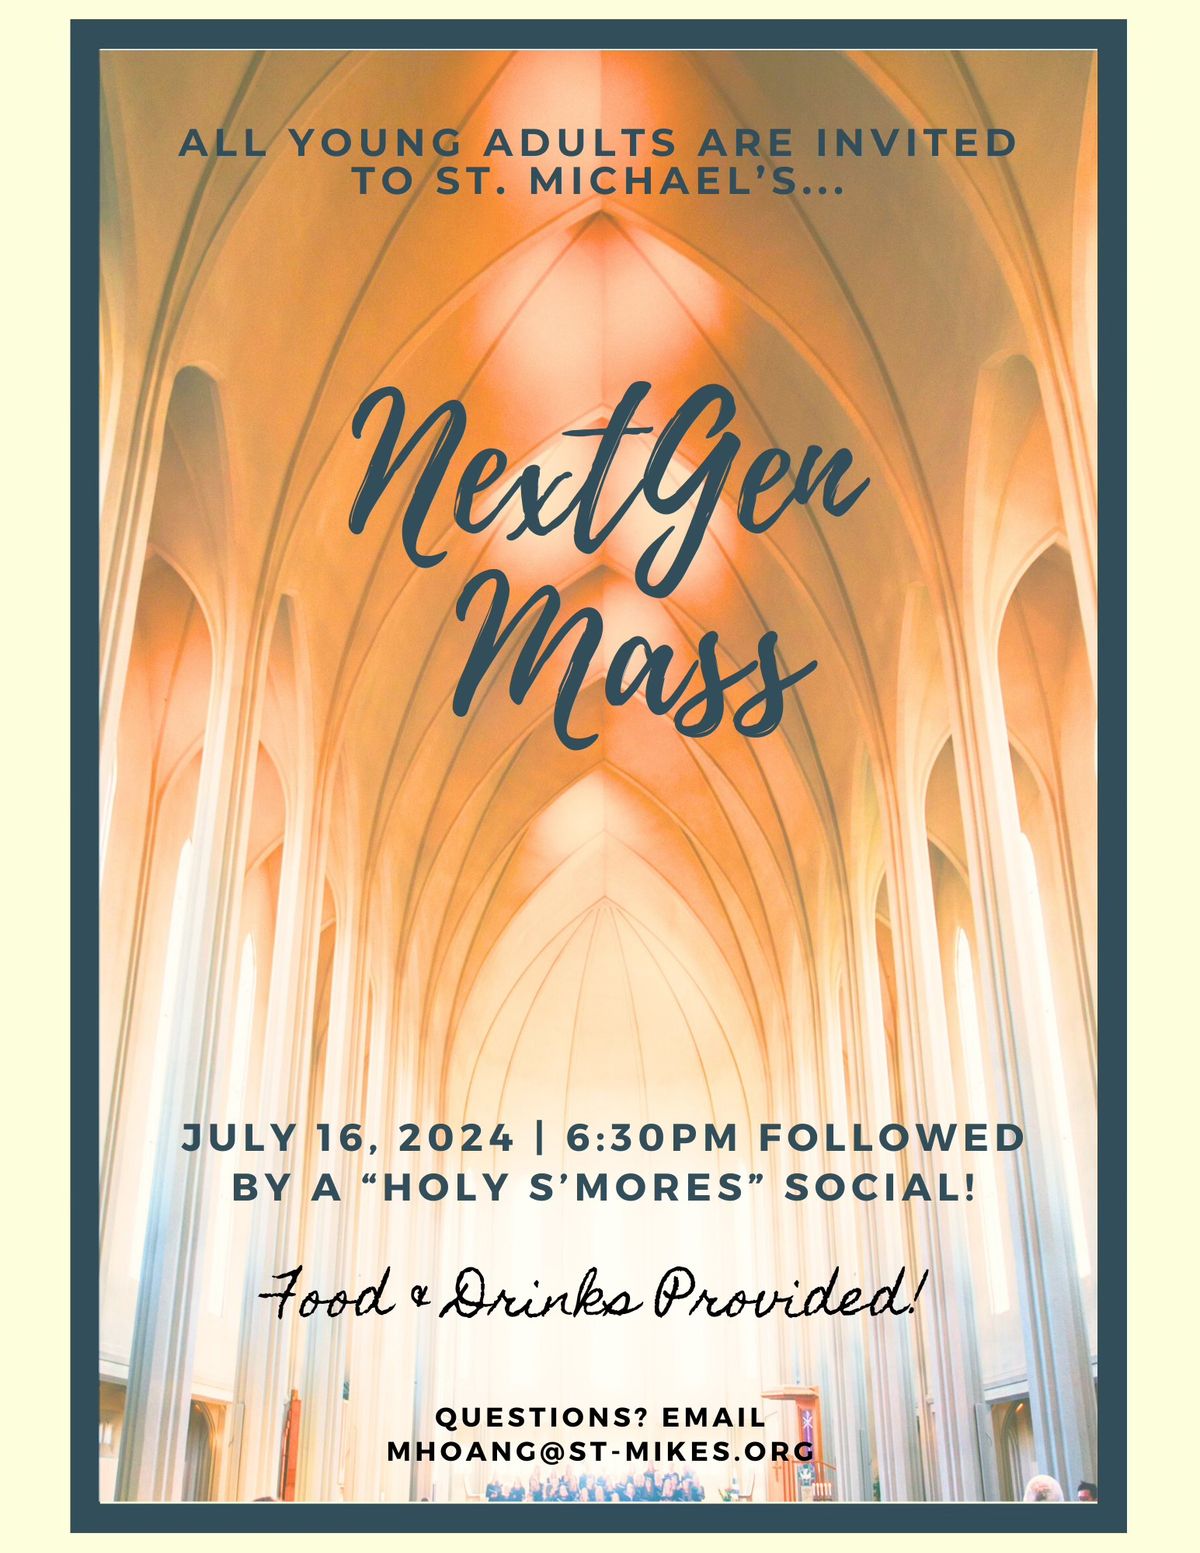 NextGen Mass Followed By A "Holy S'mores" Social!